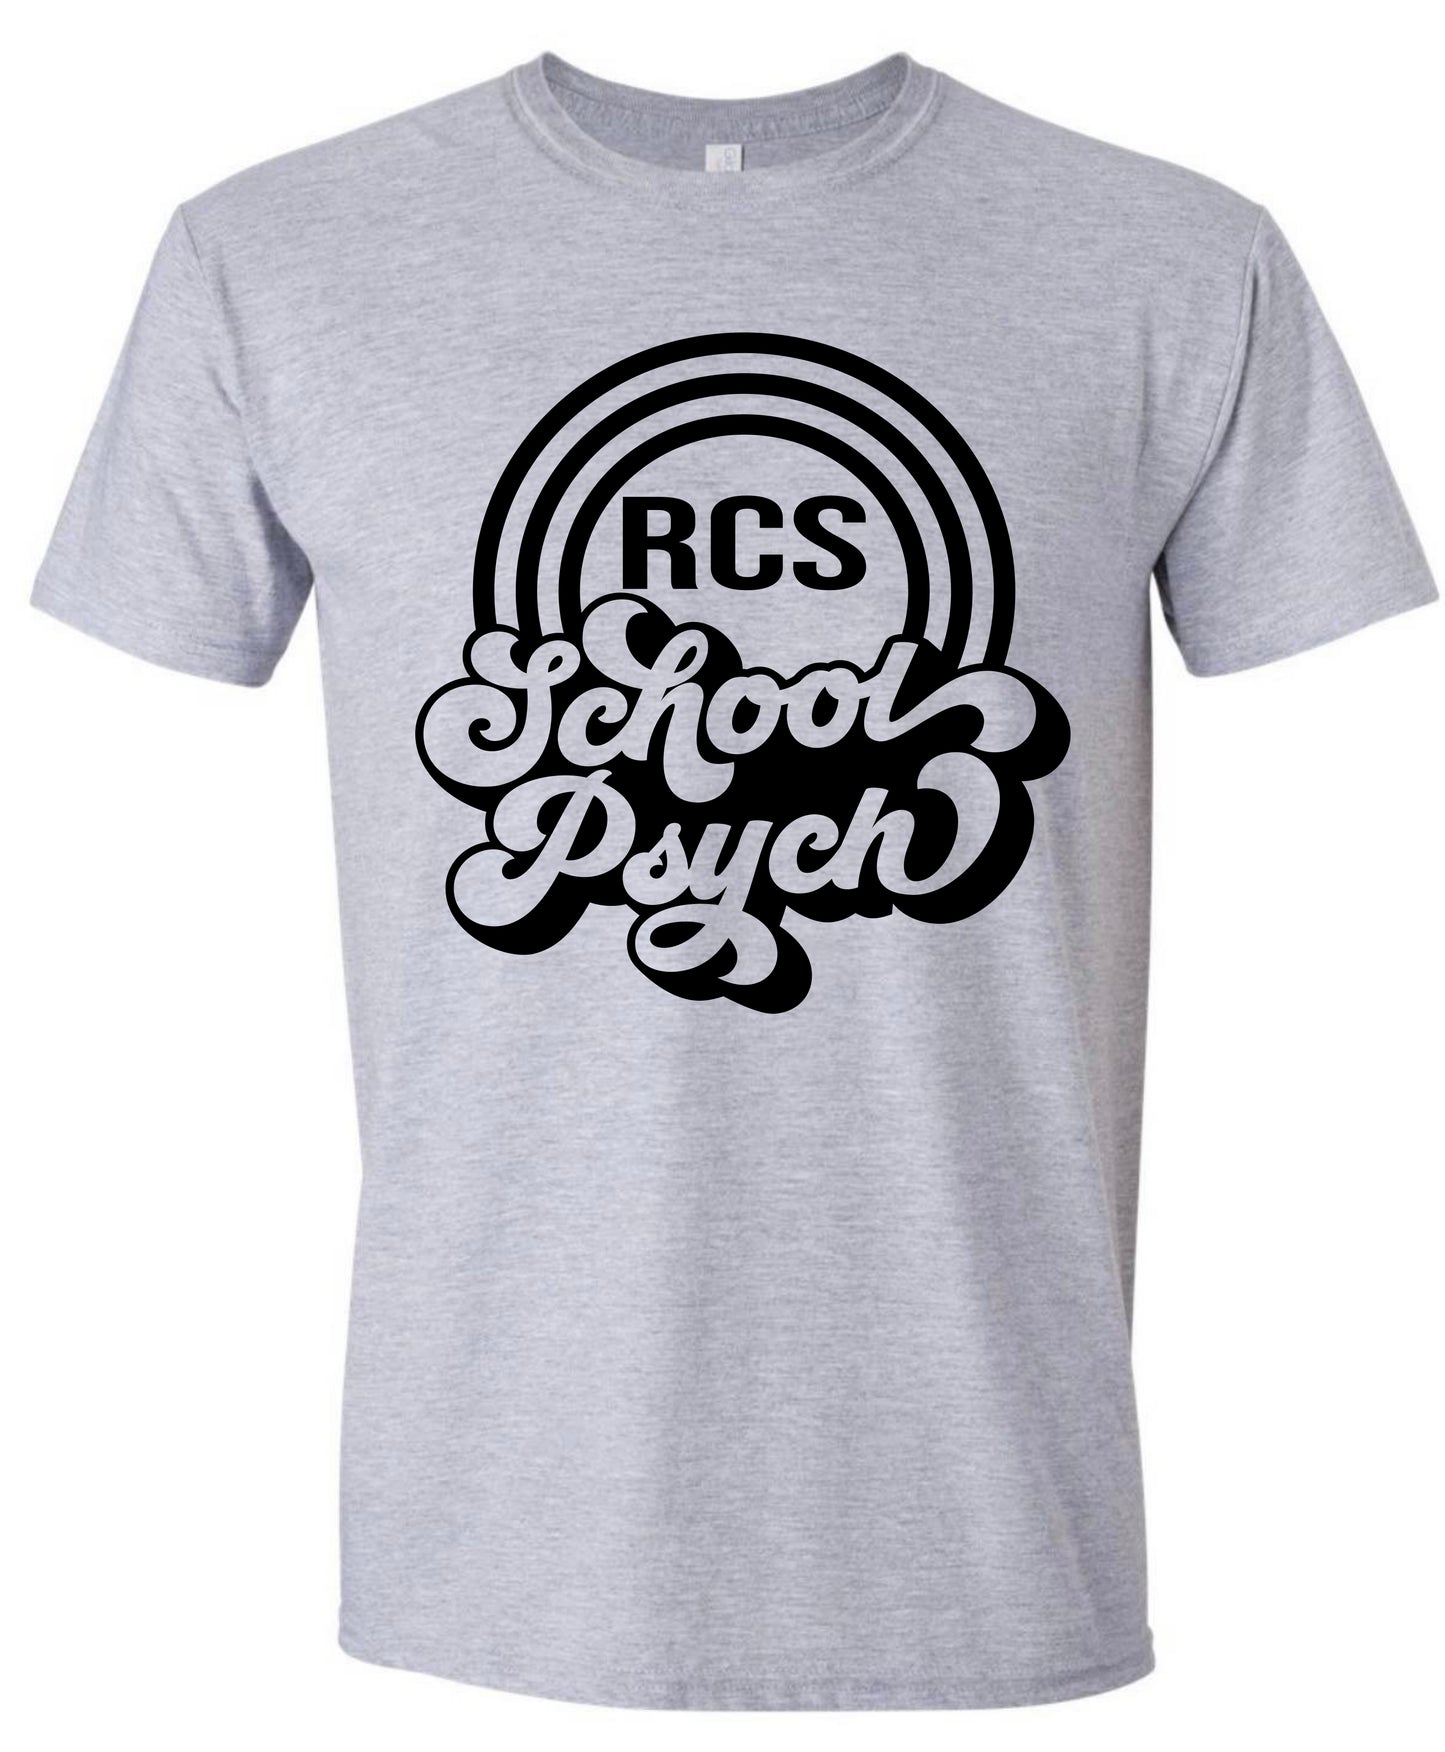 RCS School Psych Tshirt